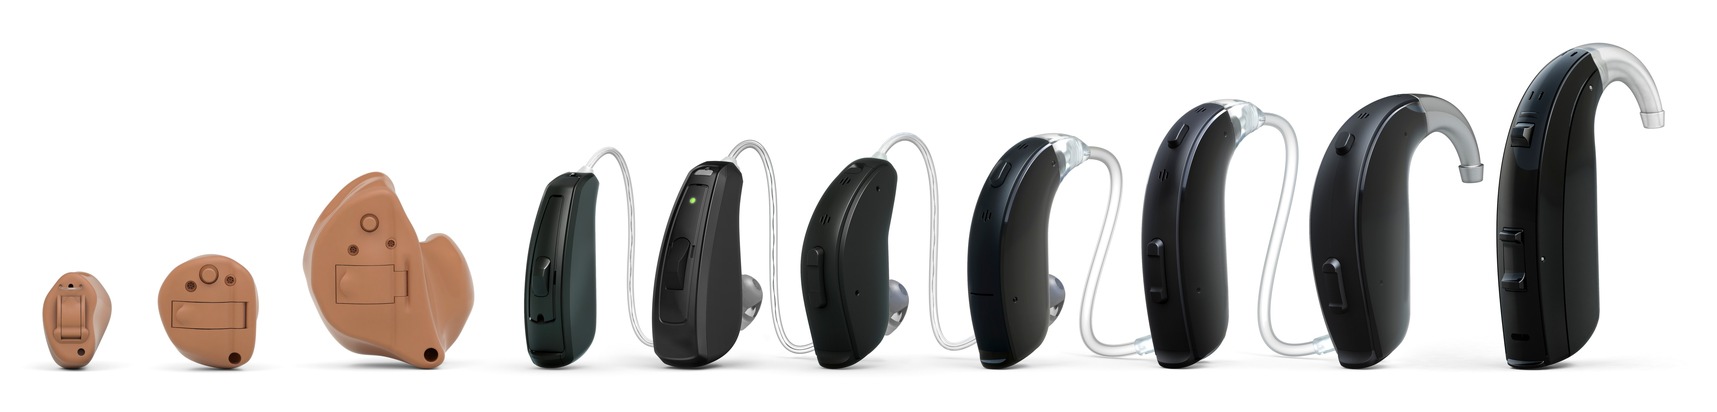 Smartes Premium-Hören für alle – gerade jetzt: GN Hearing präsentiert wegweisende Hörgerätefamilie ReSound Key